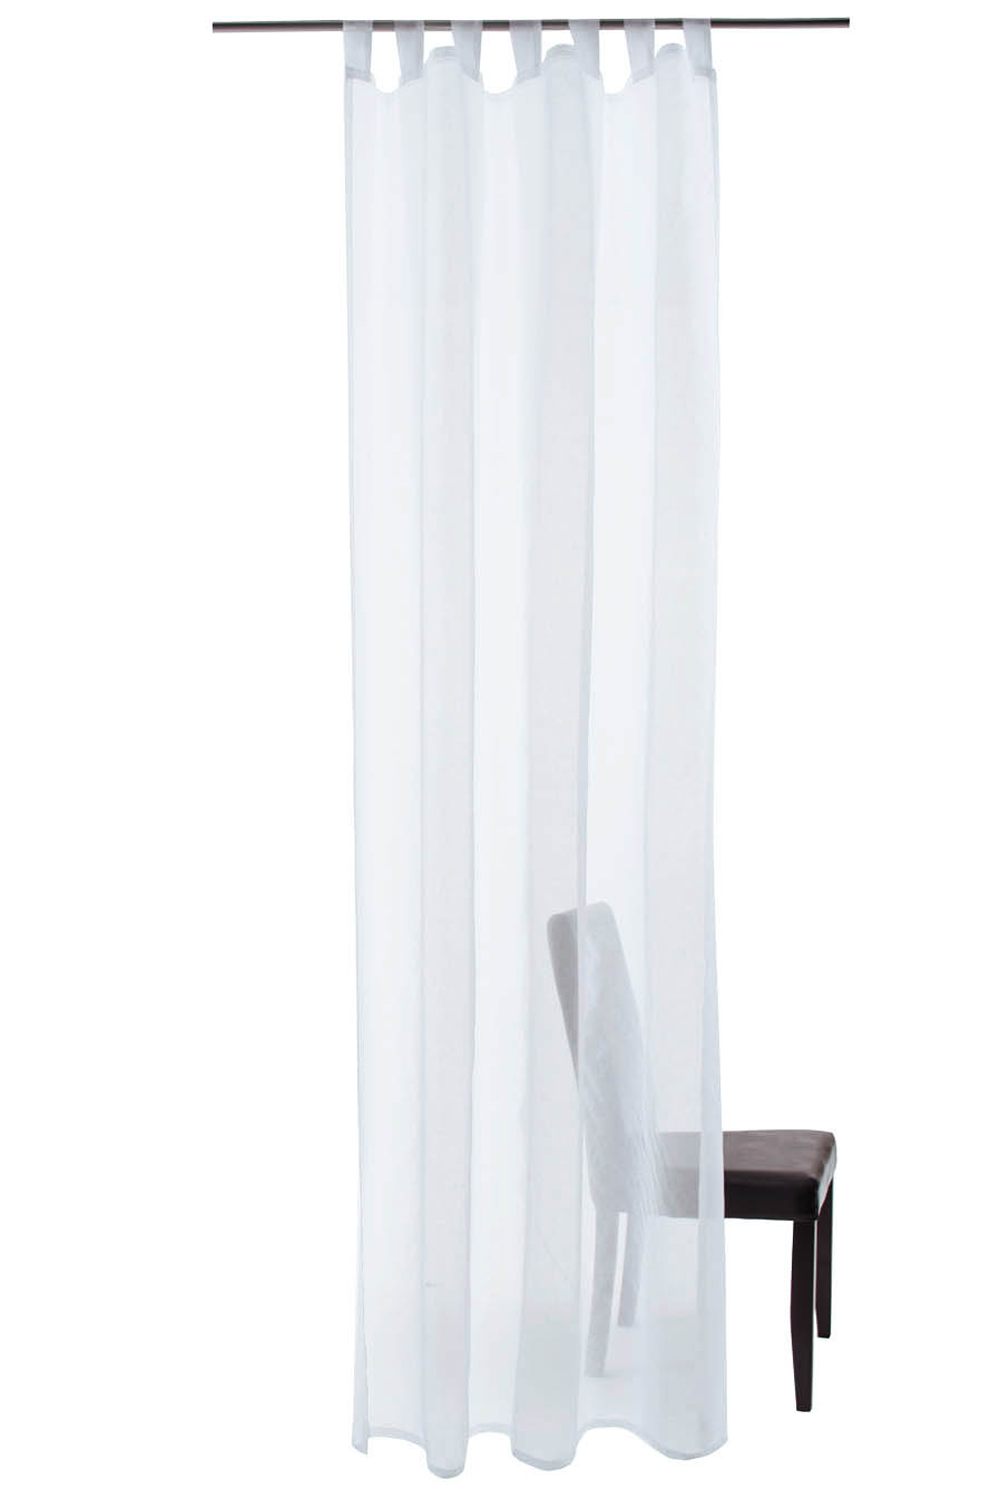 Homing Transparenter Schlaufenschal Barletta weiß transparenter Voile Uni